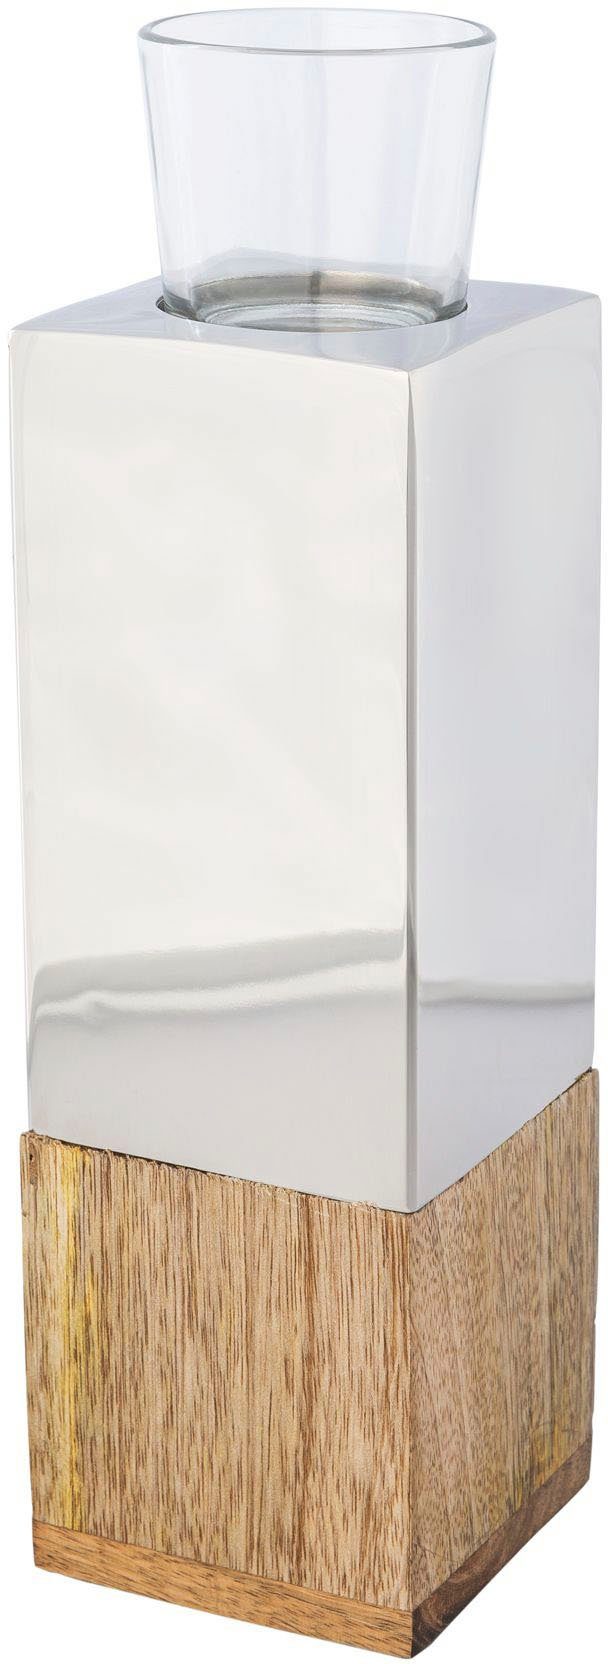 Creativ home Teelichthalter Kerzenhalter Tower (1 St), aus Holz, Edelstahl  und Glas, Formschöner Teelichthalter